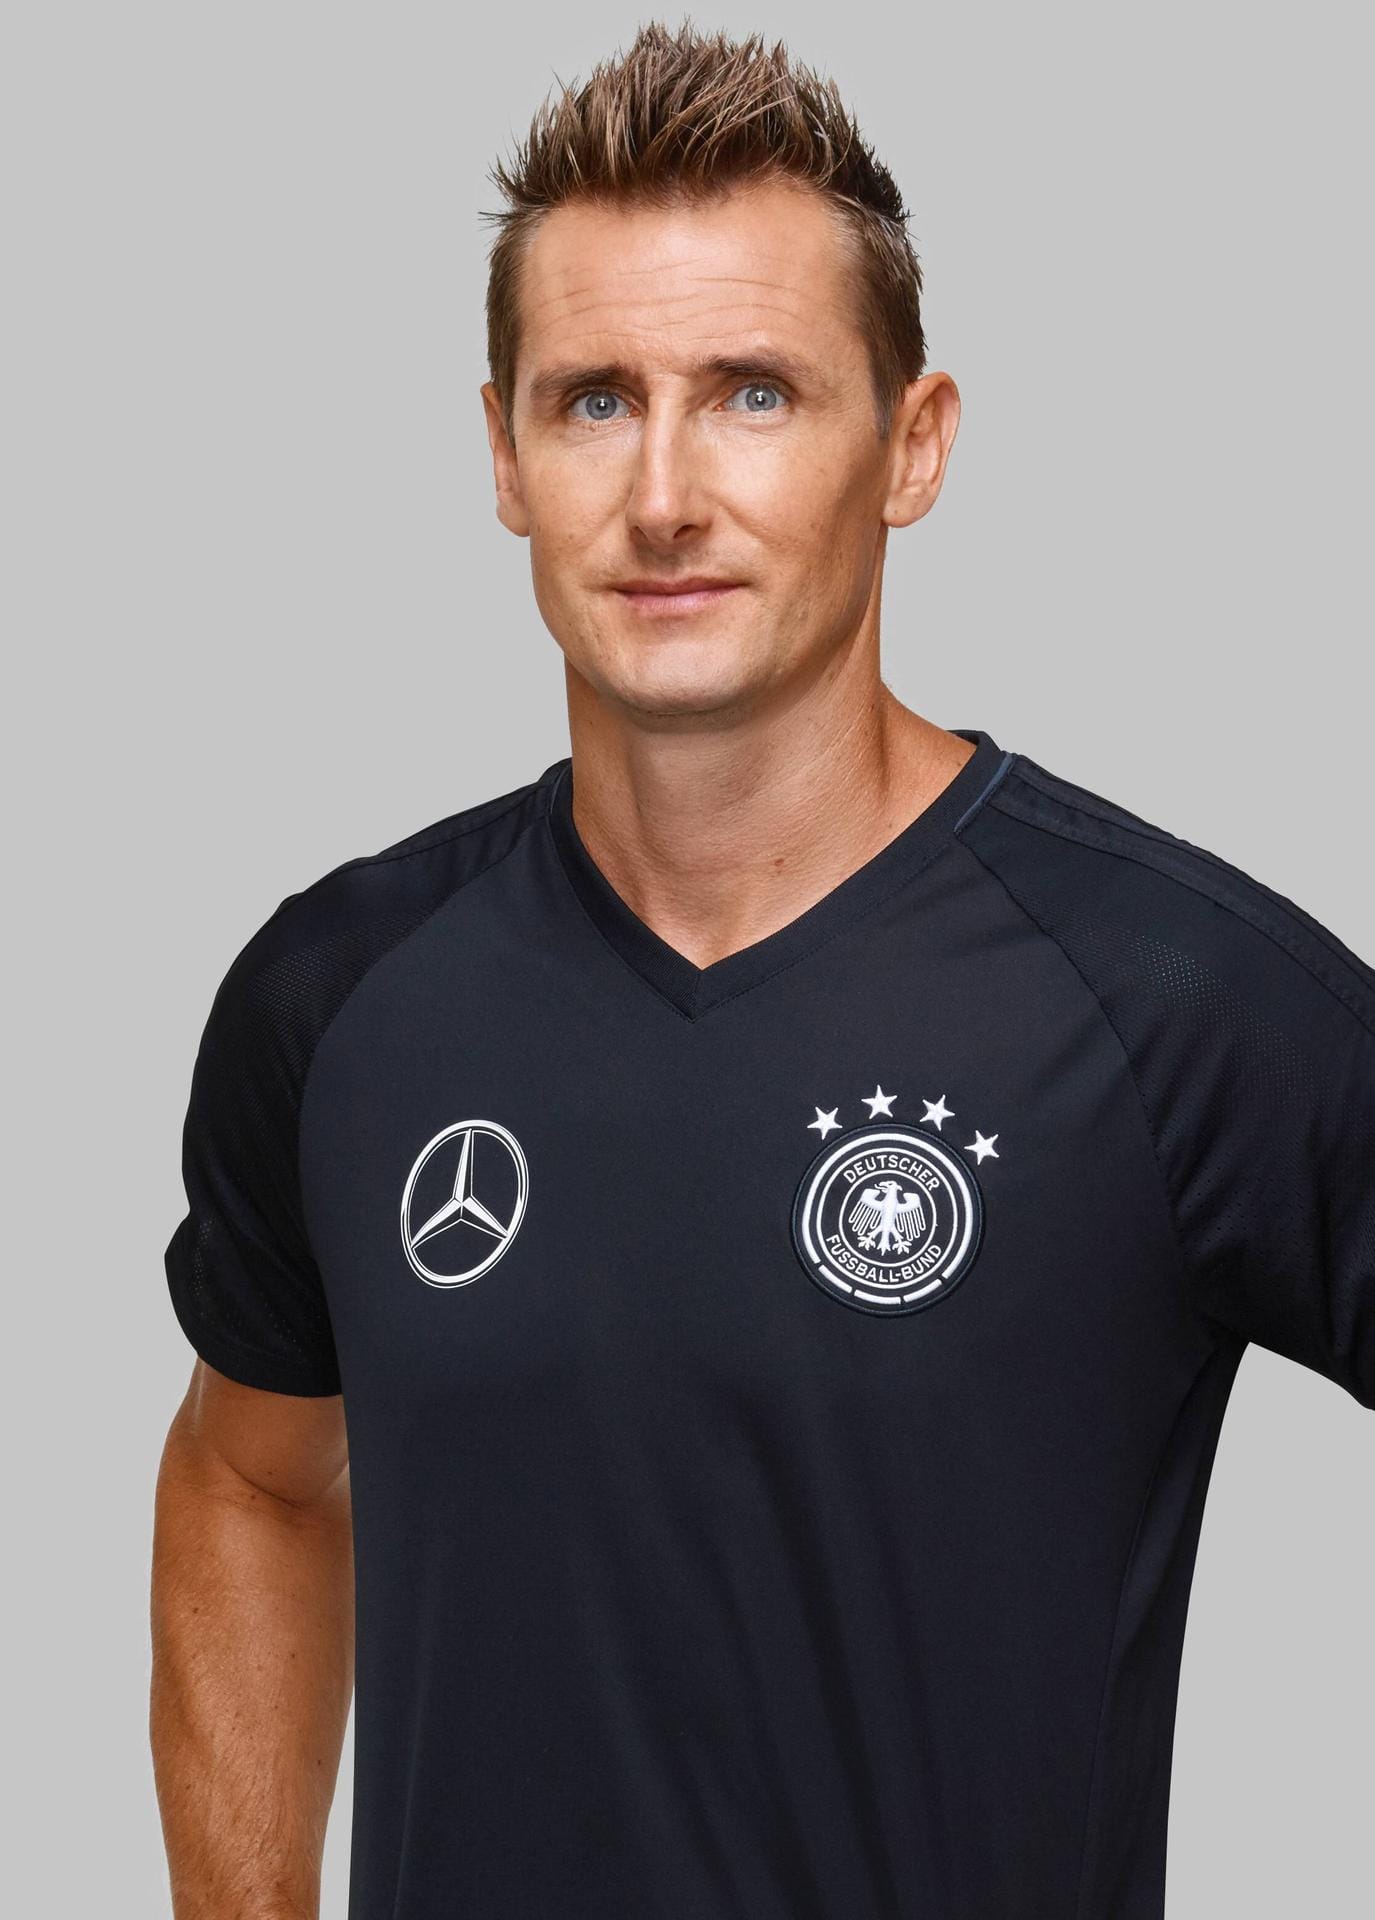 Miroslav Klose: Nach dem WM-Sieg 2014 hat der 40-Jährige seine DFB-Karriere beendet. Bis 2016 war der Stürmer bei Lazio Rom aktiv. Bei der WM in Russland ist er als Assistent von Bundestrainer Jogi Löw dabei. Seit 1. Juli fungiert der Torschützenkönig von 2006 zudem beim FC Bayern als U17-Trainer.